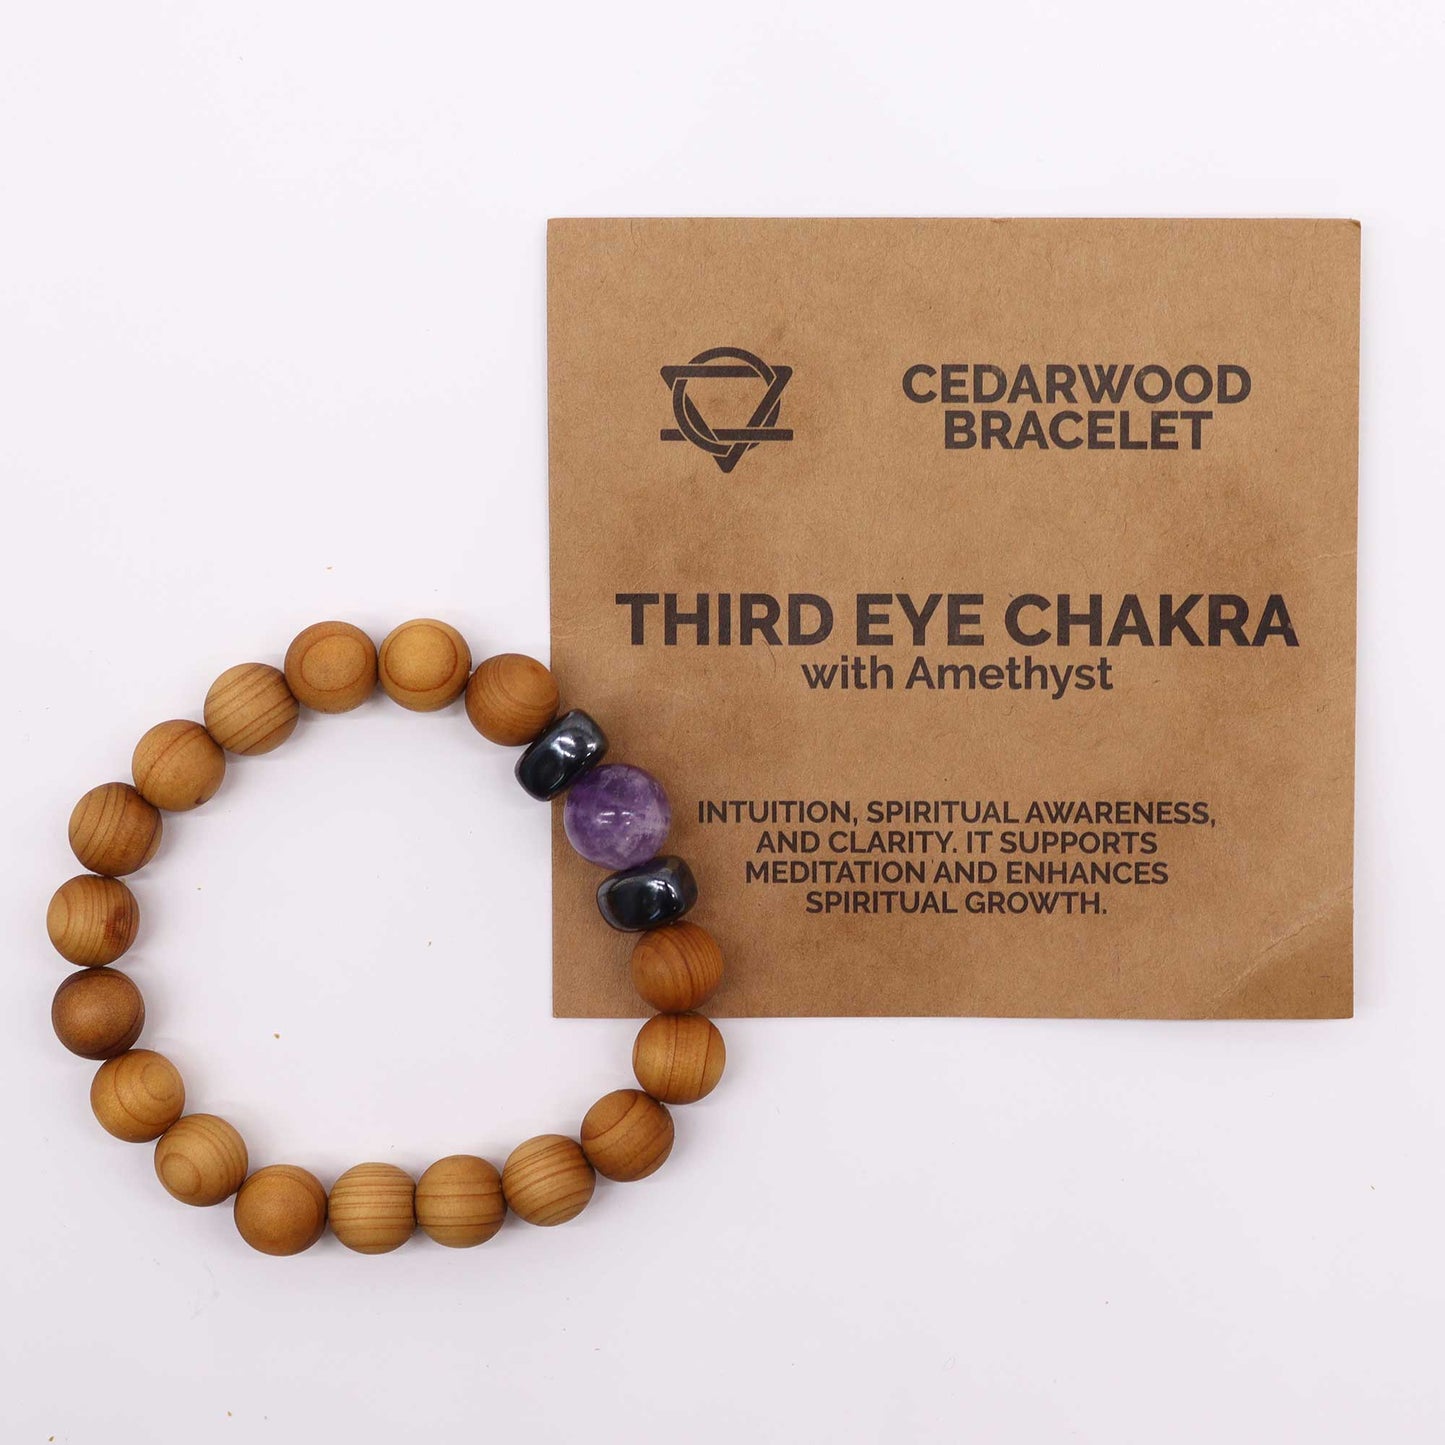 Cedarwood Third Eye Chakra Bangle with Amethyst